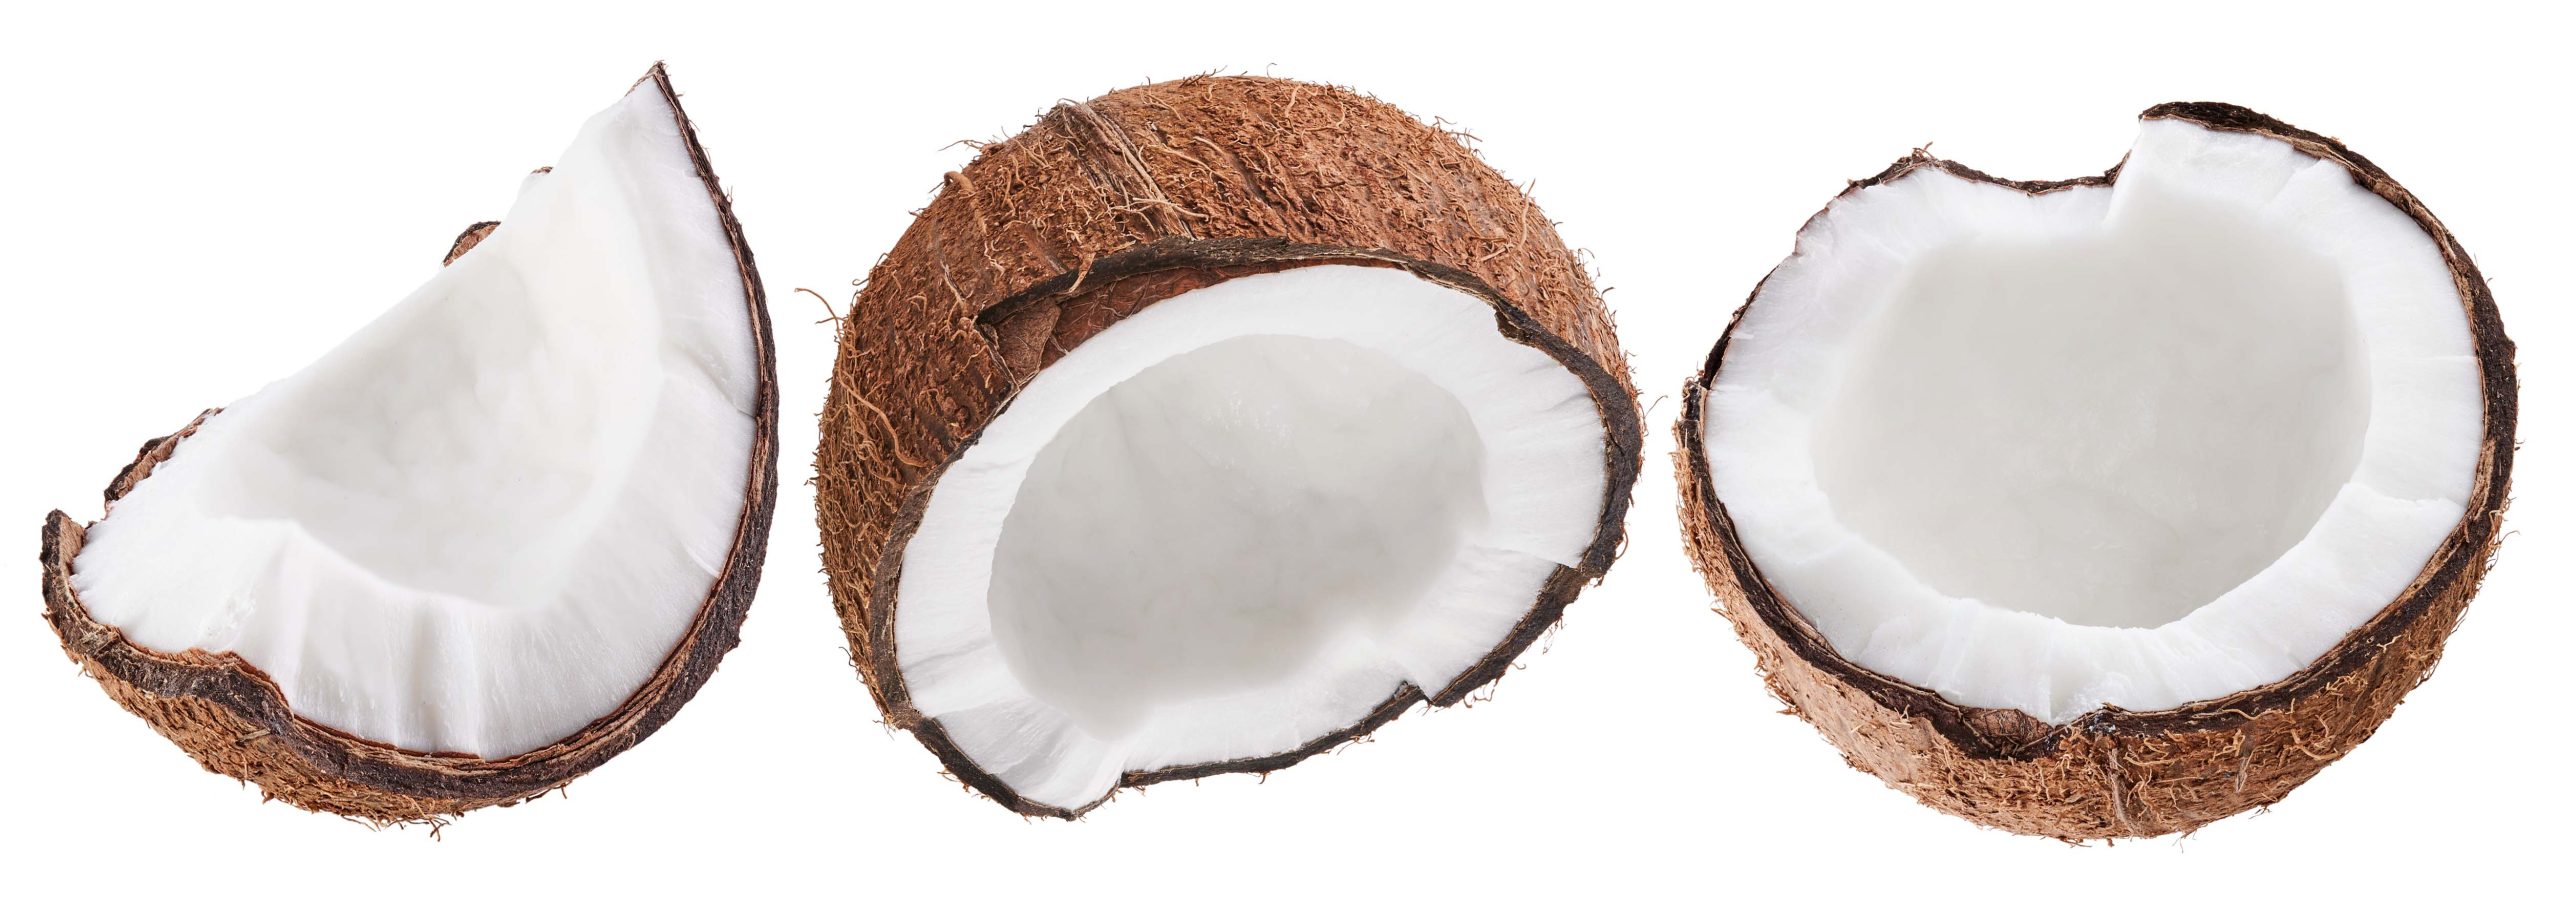 Klopt het dat kokosnoot ongezond is?